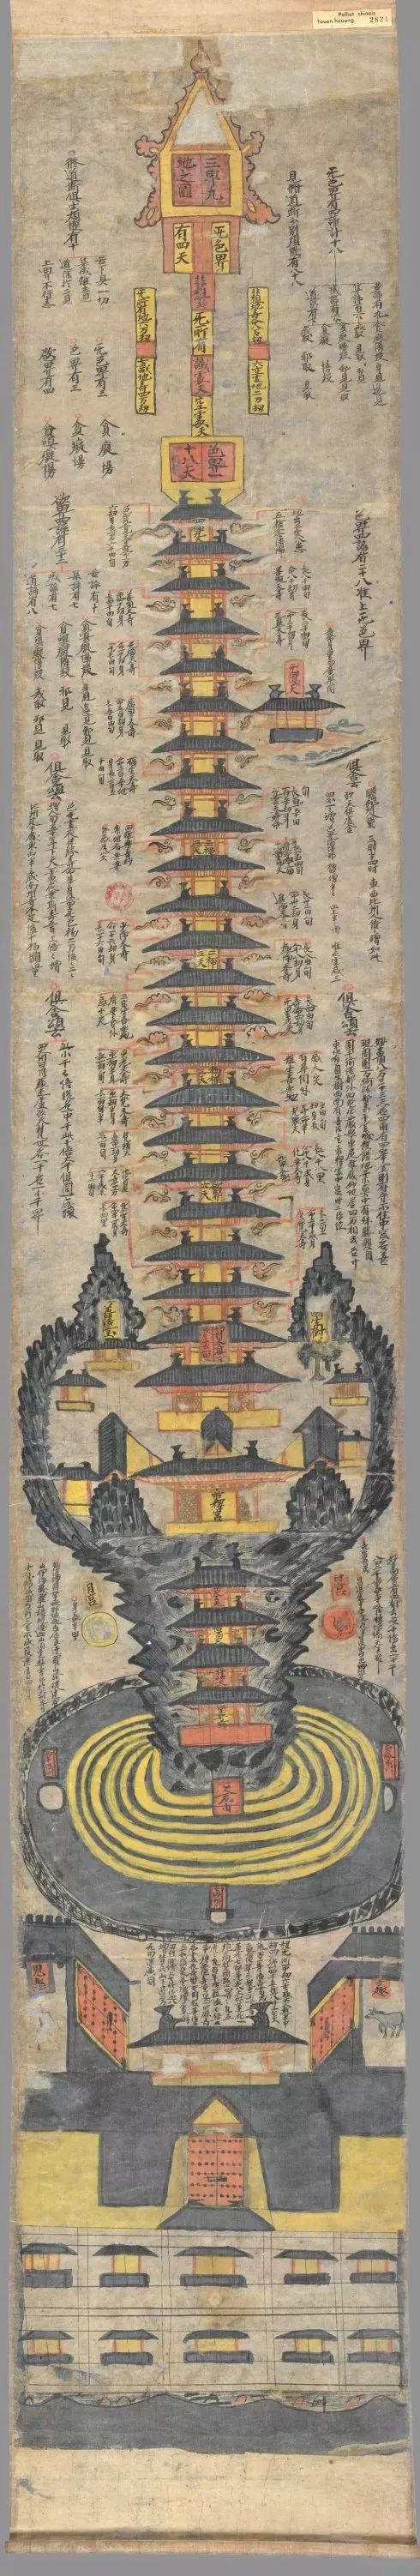 世界上最早最完整的三千大千世界图 带你一窥佛陀眼中